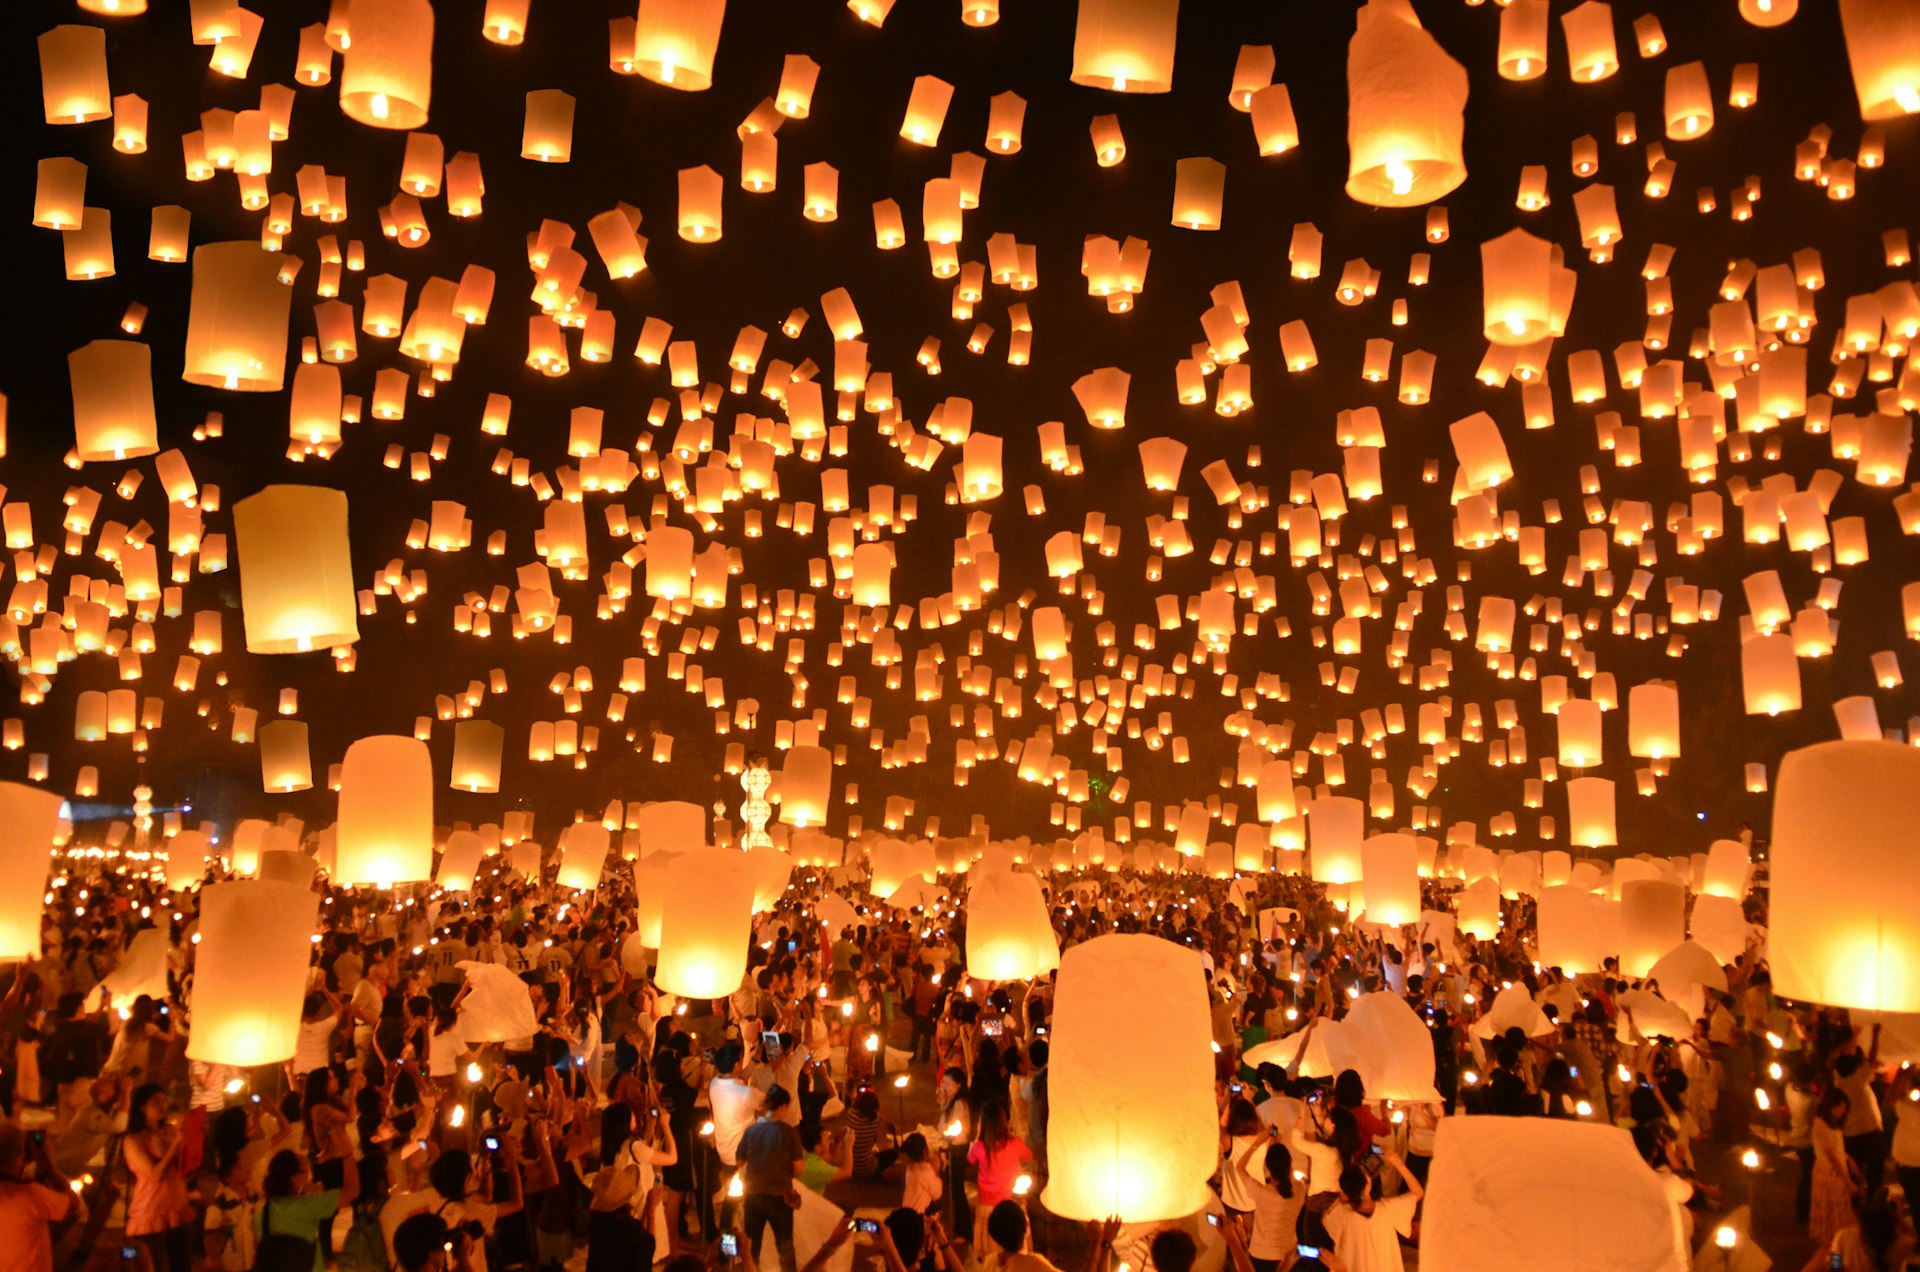 作为水灯节的一部分，数十盏点燃的灯笼漂浮在泰国黑暗的天空中